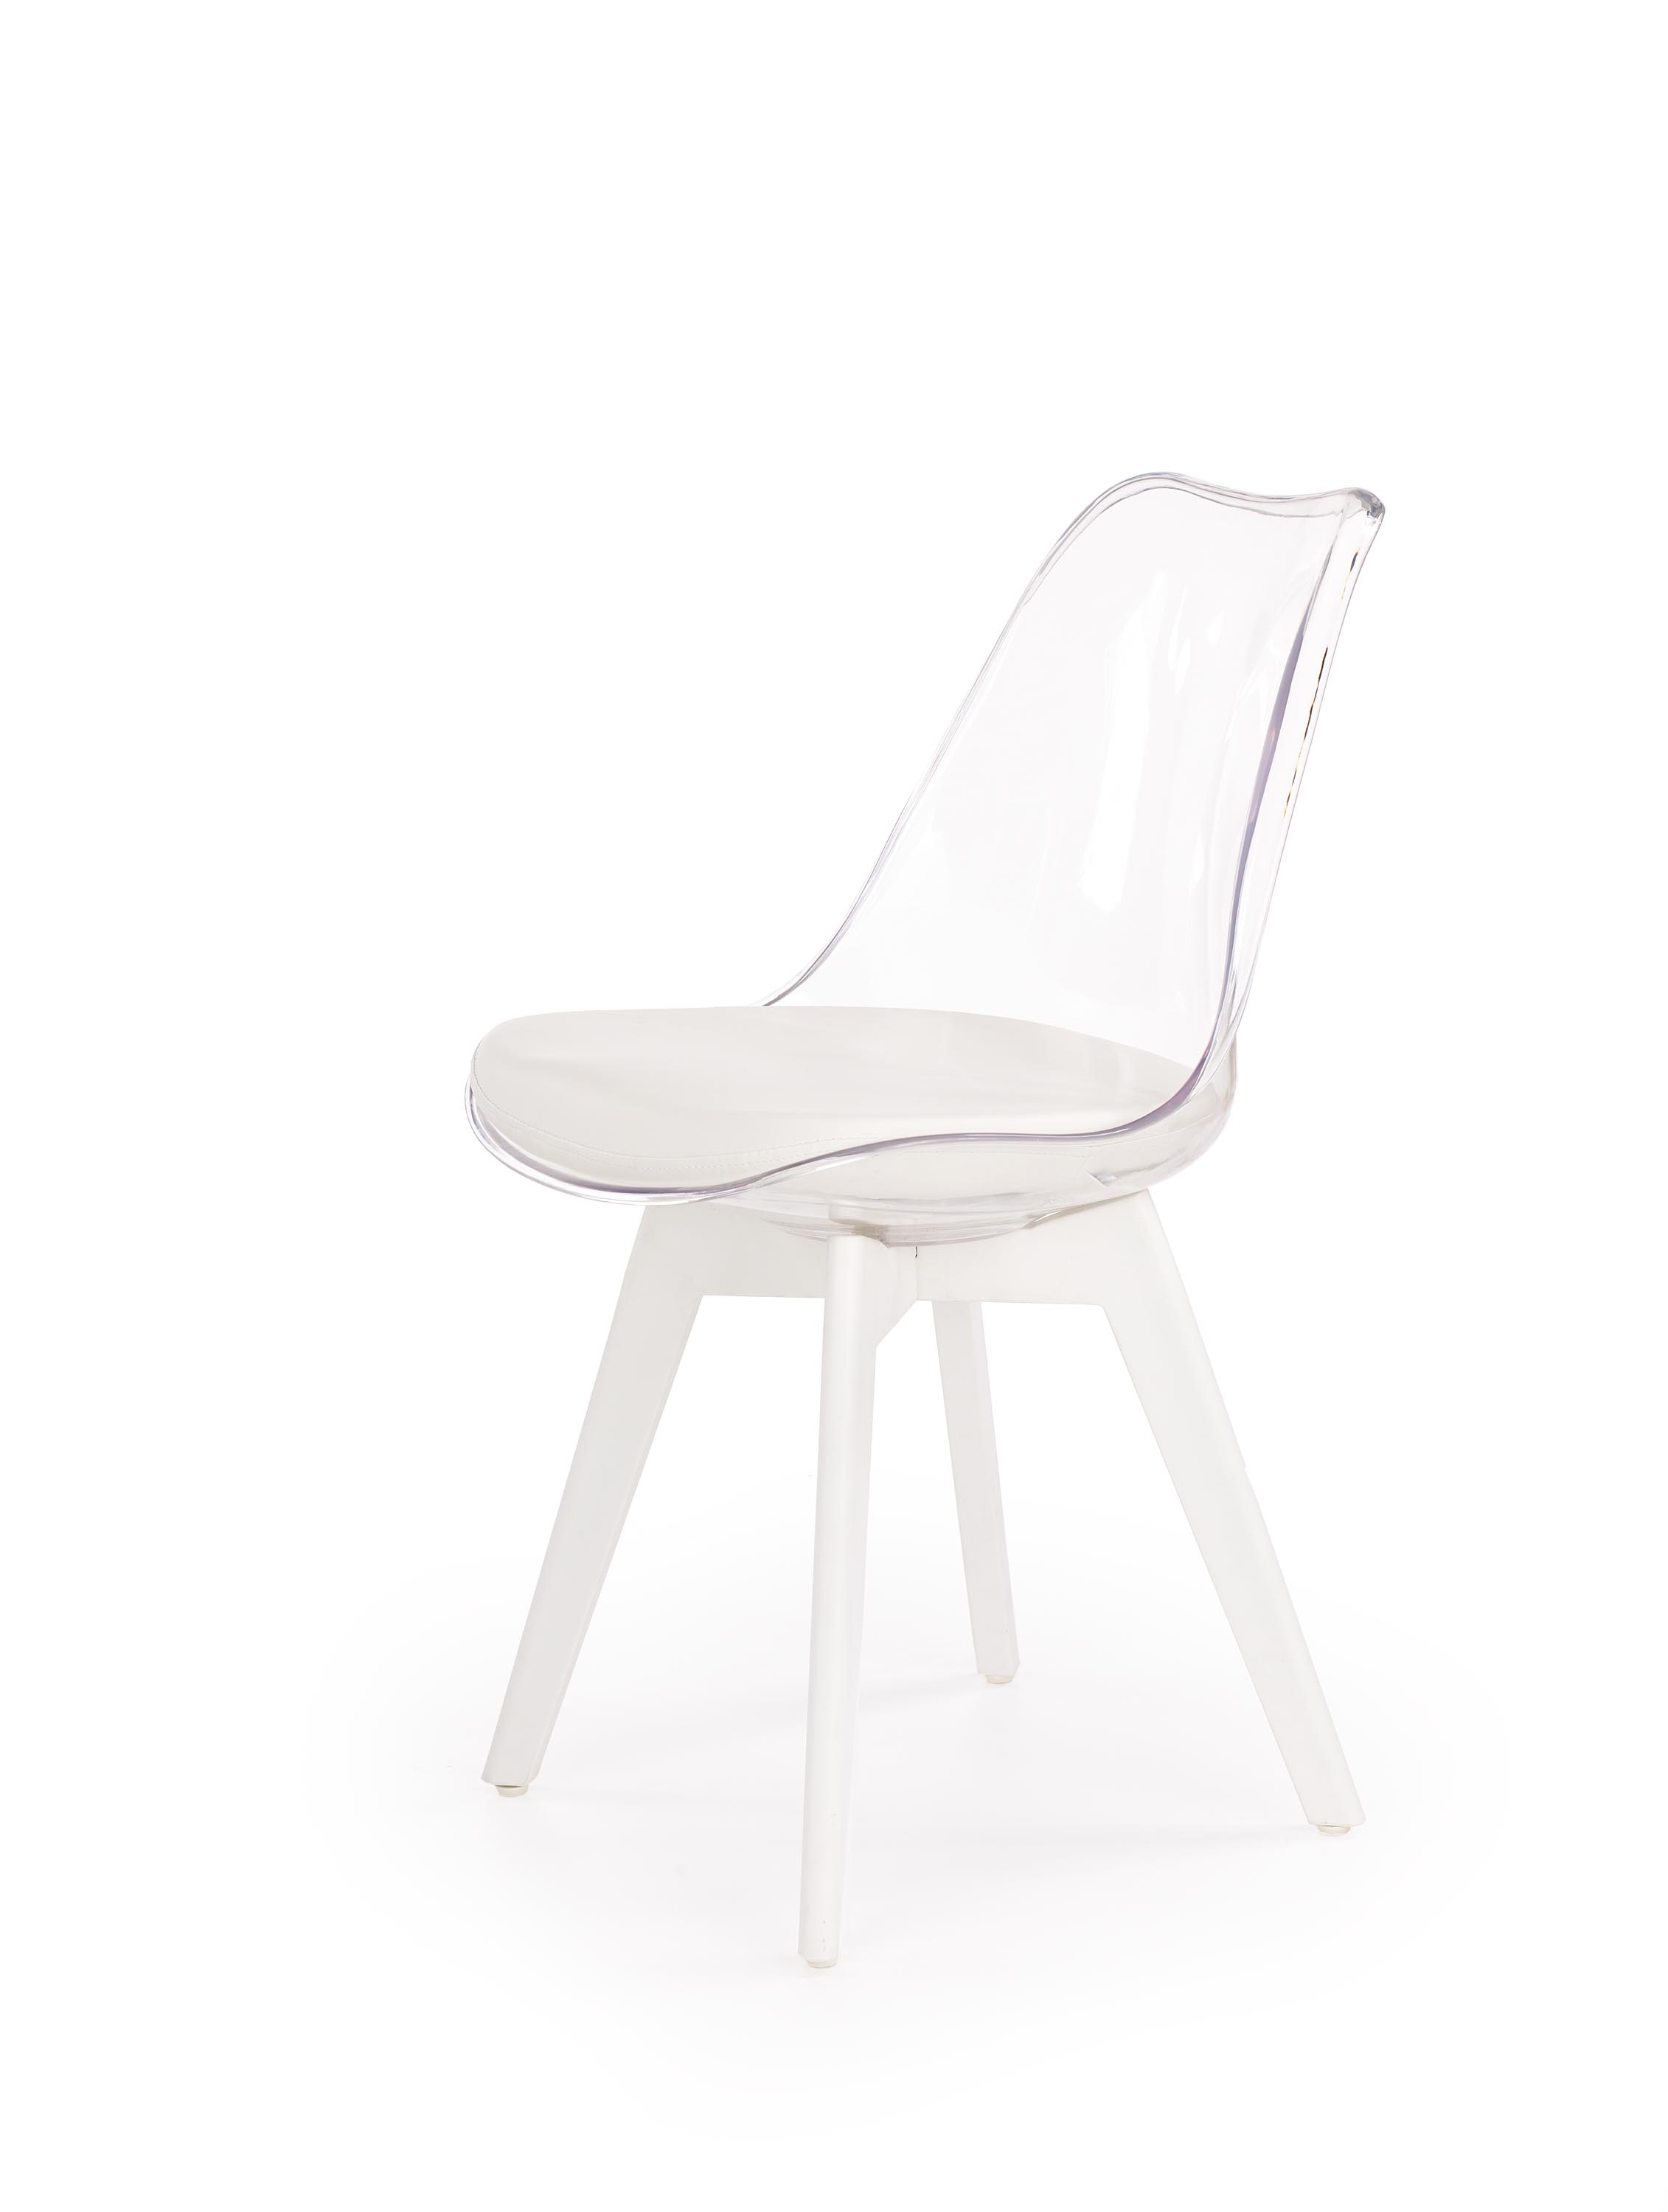 Scaun K245 transparent/alb k245 Židle béžovýbarvá / bílá